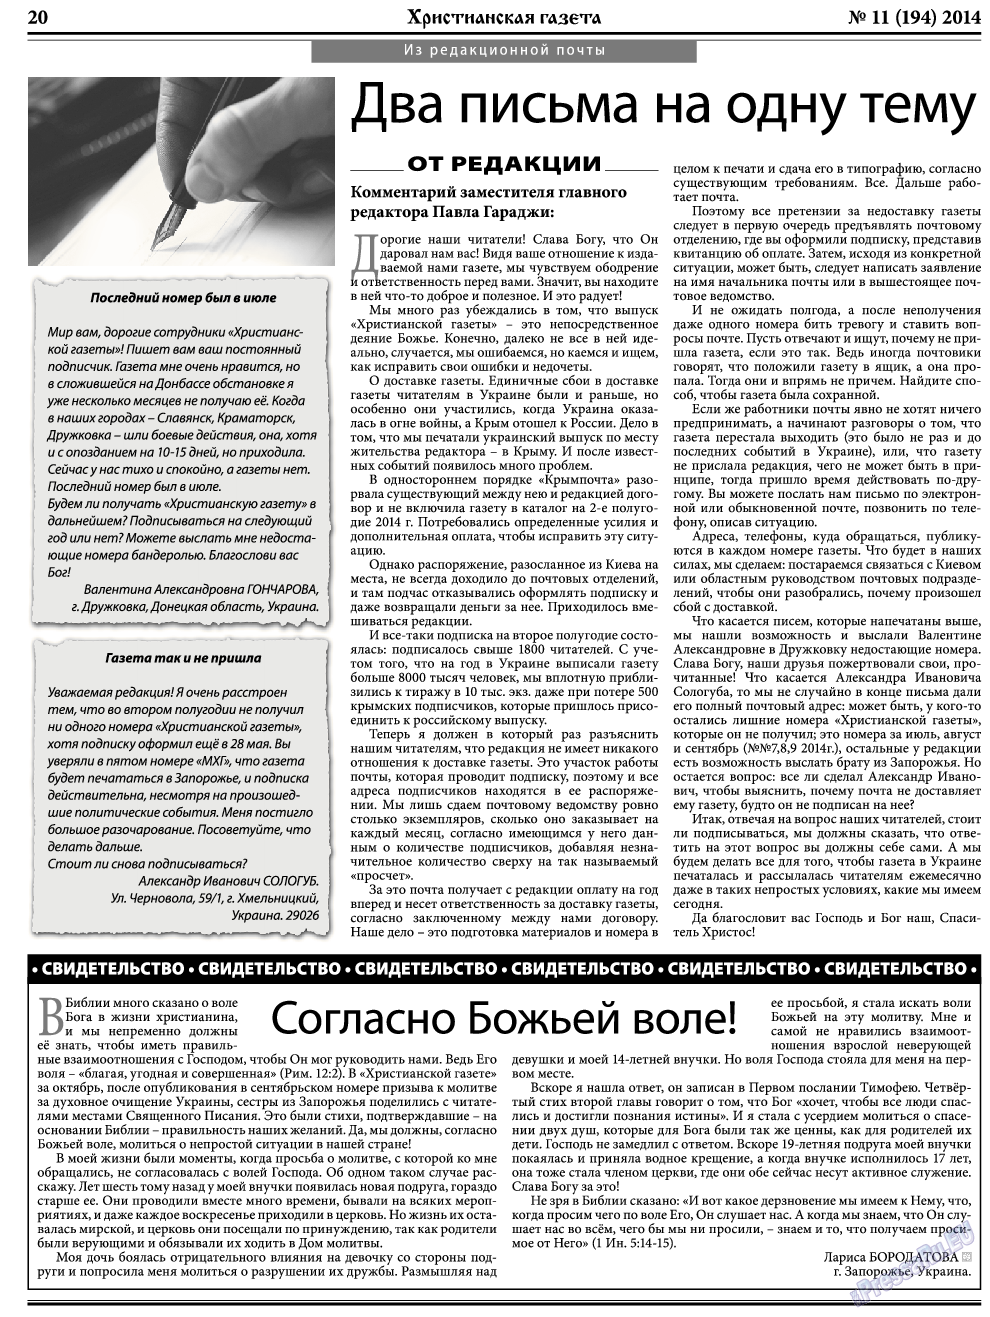 Христианская газета, газета. 2014 №11 стр.28